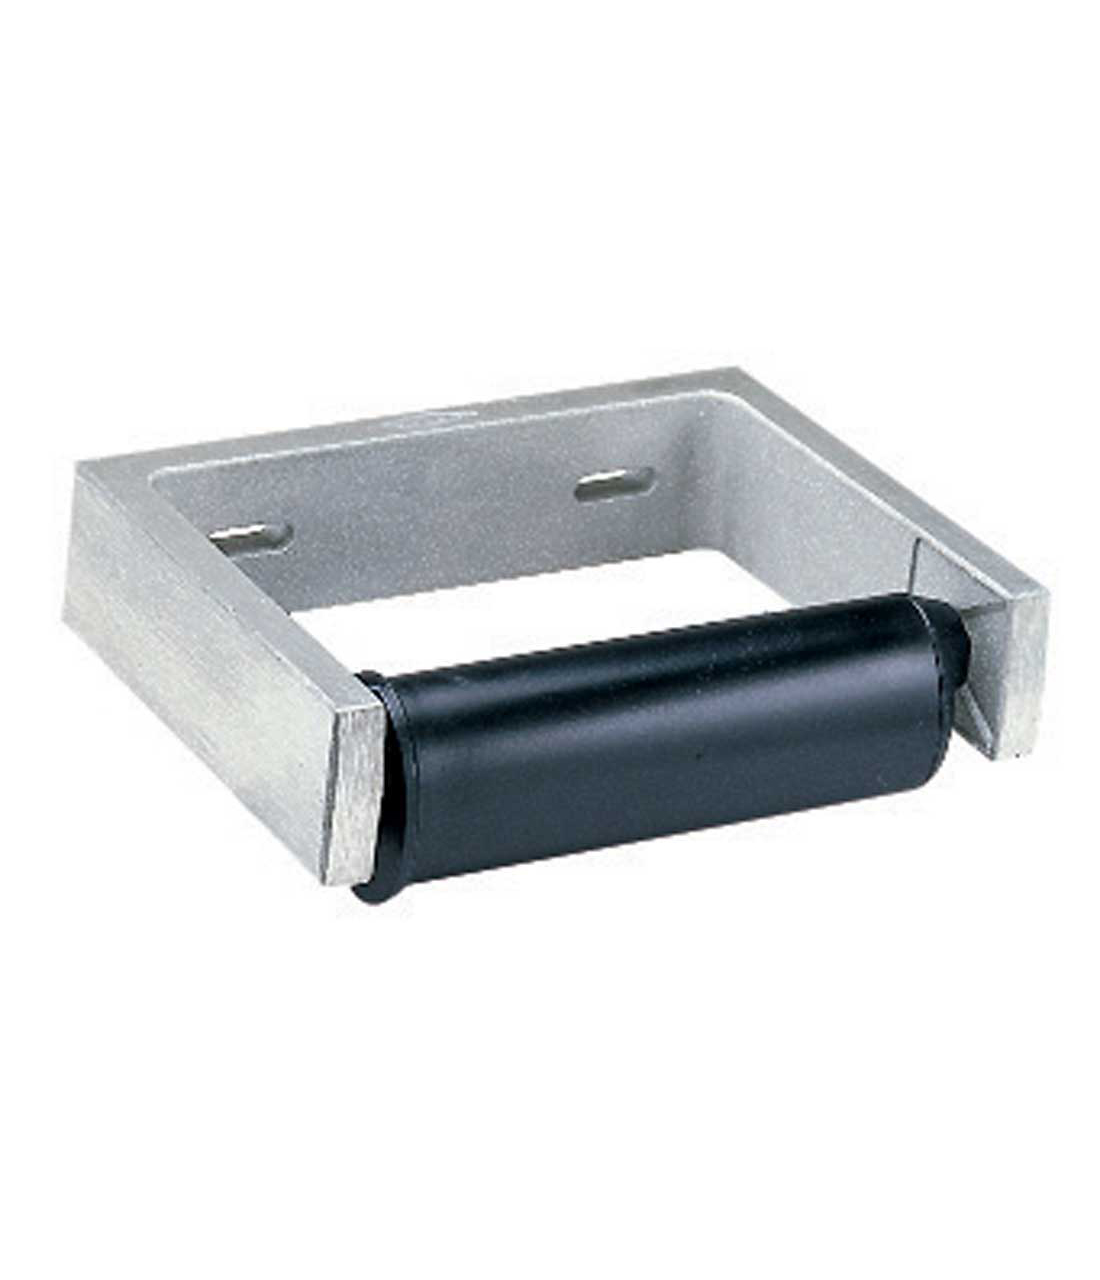 1/set Bobrick Cam Lock Set #388-42 for Paper Towel & Toilet Tissue Disp. 